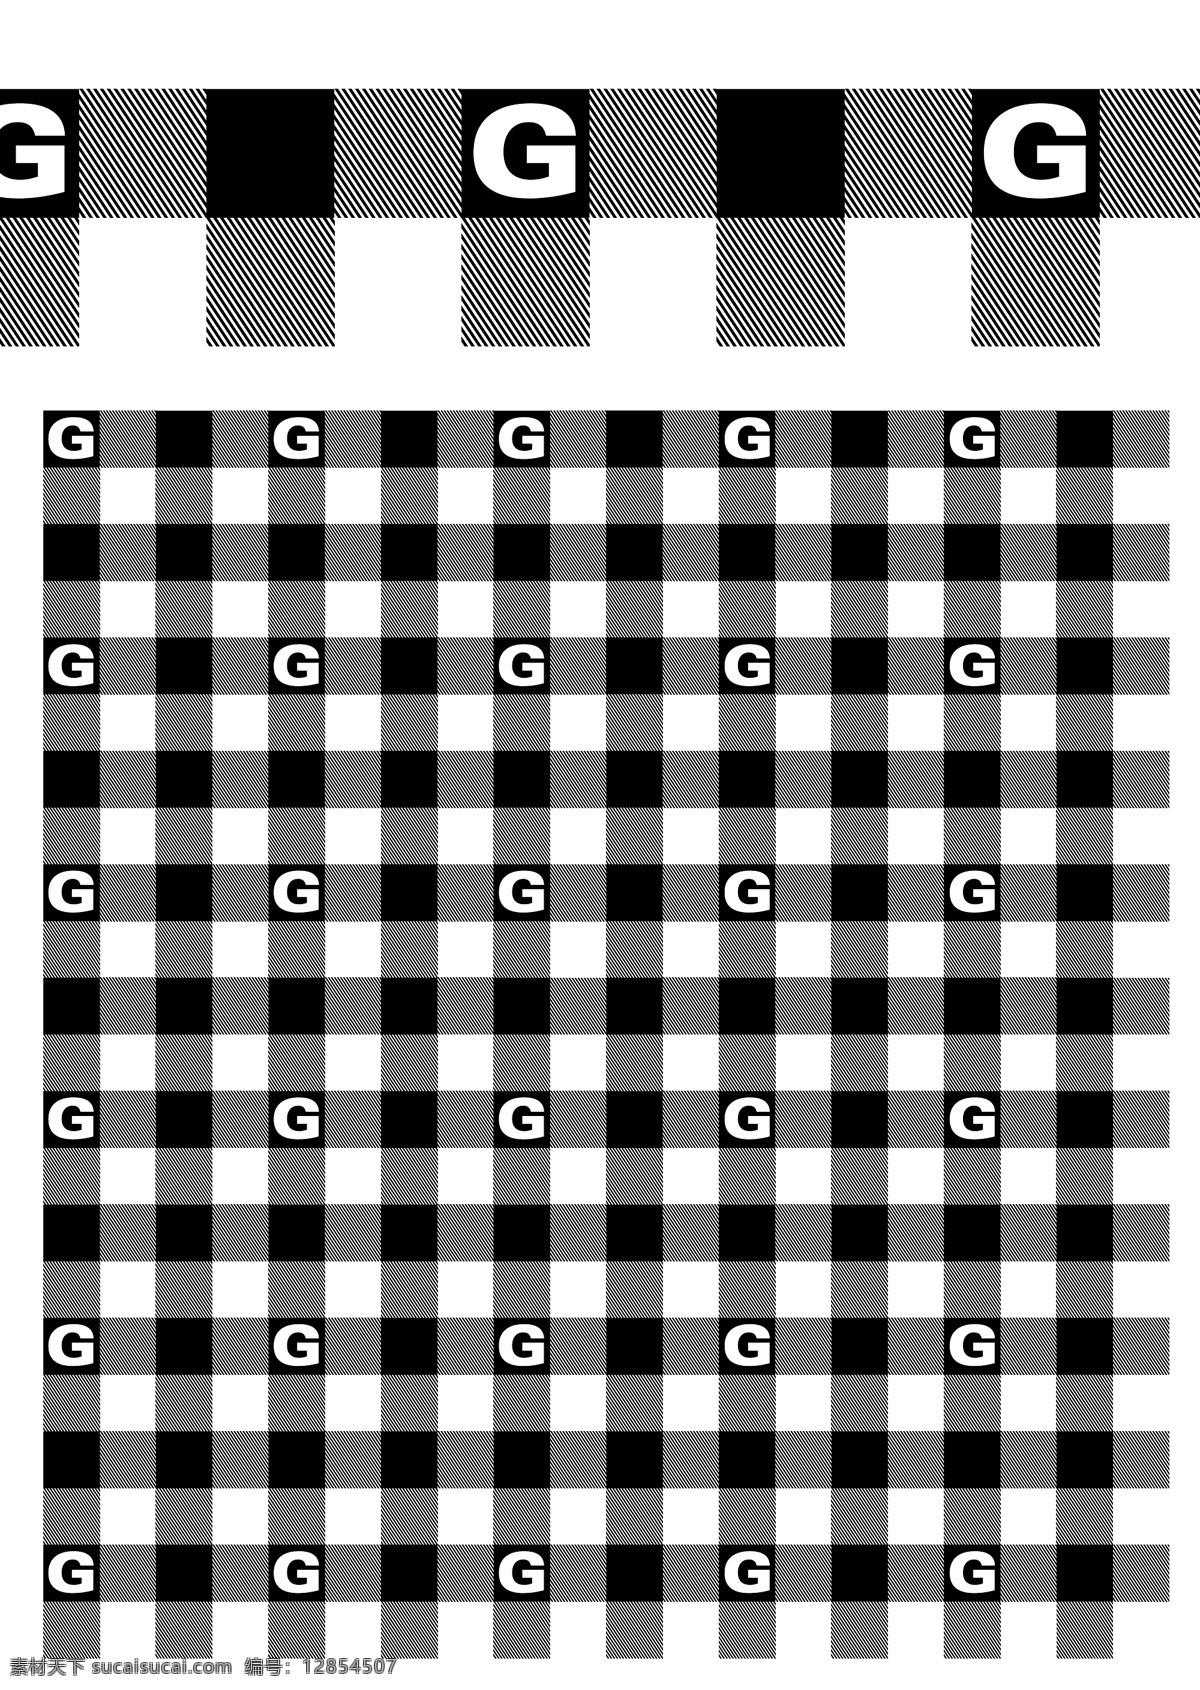 格子布 格子布纹 新格子布纹 创意格子布 流行格子布 服装设计图 矢量素材 其他矢量 矢量